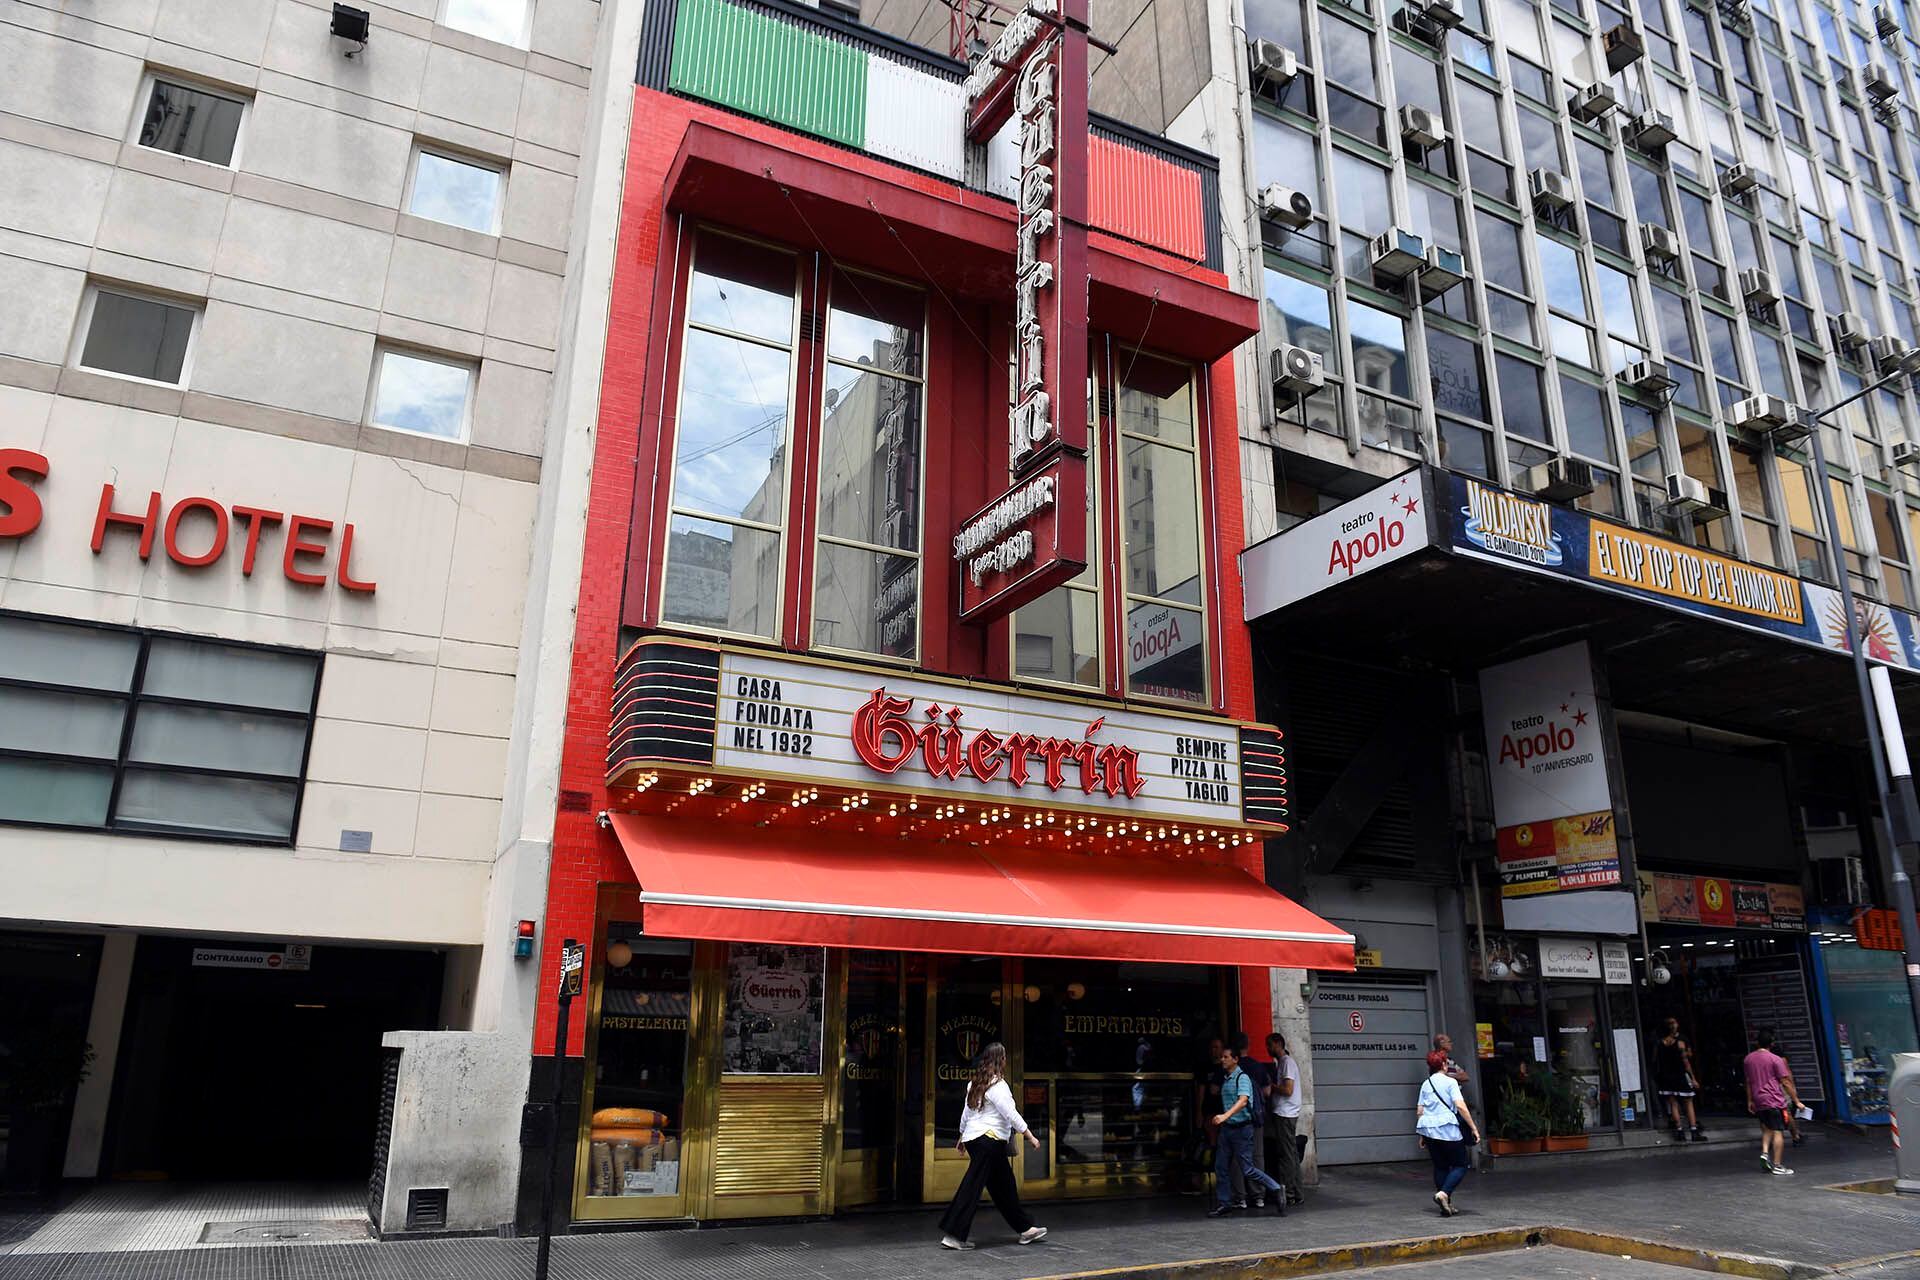 "El 97% de las pizzerías en la Ciudad de Buenos Aires están cerradas. Estamos realmente sobrepasados por la cantidad de gente que nos consulta qué va a pasar", dijo Antonio Vázquez (Maximiliano Luna) 